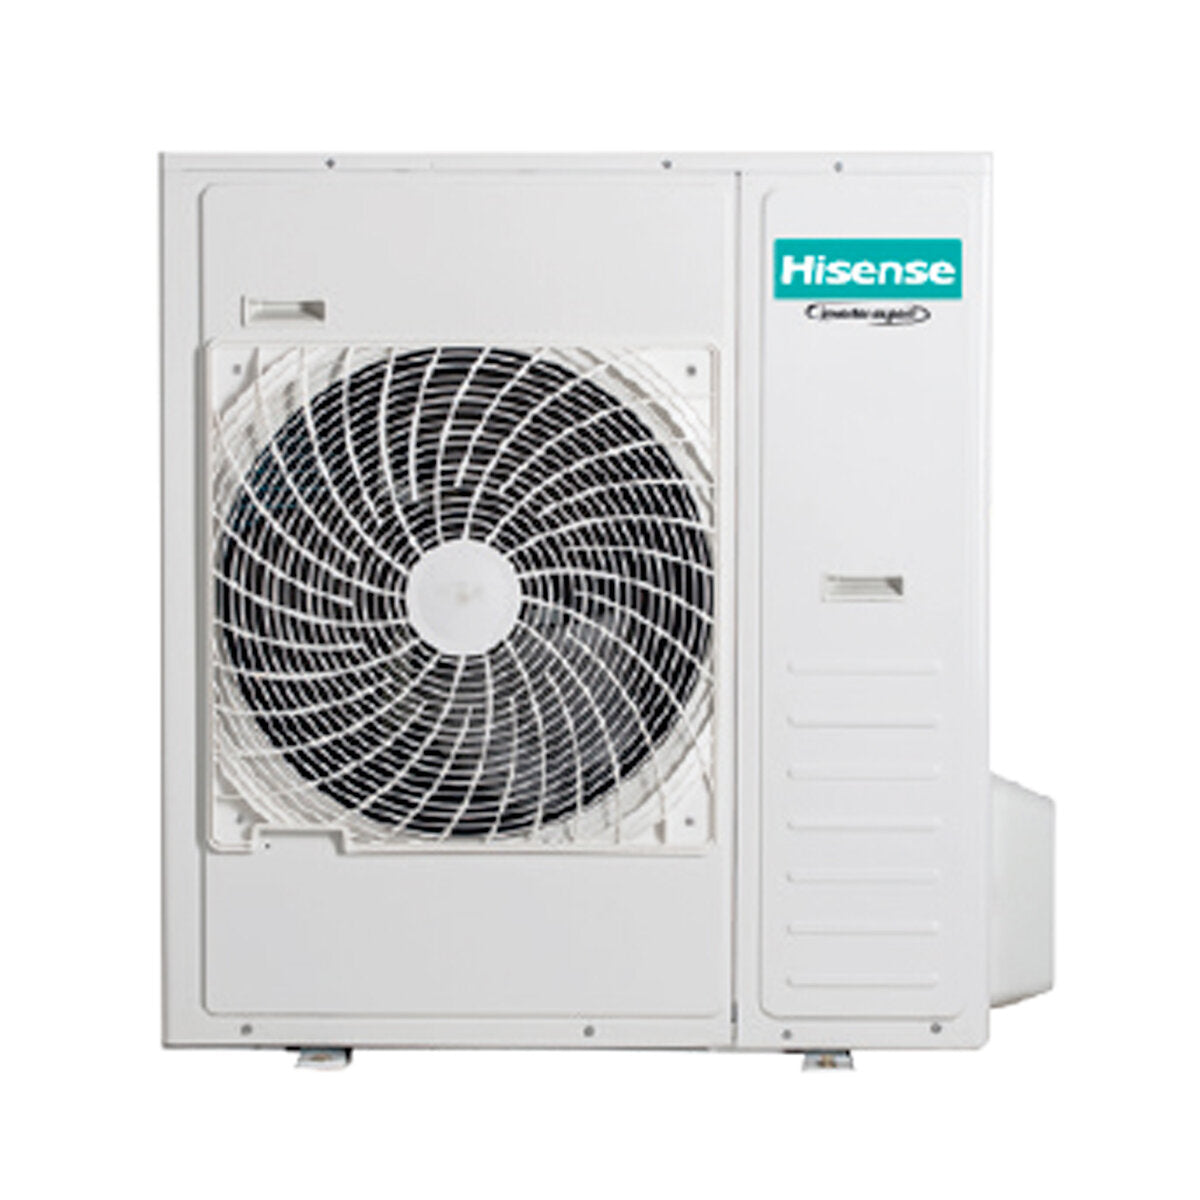 Hisense Hi-Comfort climatiseur split quadri 7000 + 7000 + 18000 + 24000 BTU wifi inverter unité extérieure 12,5 kW